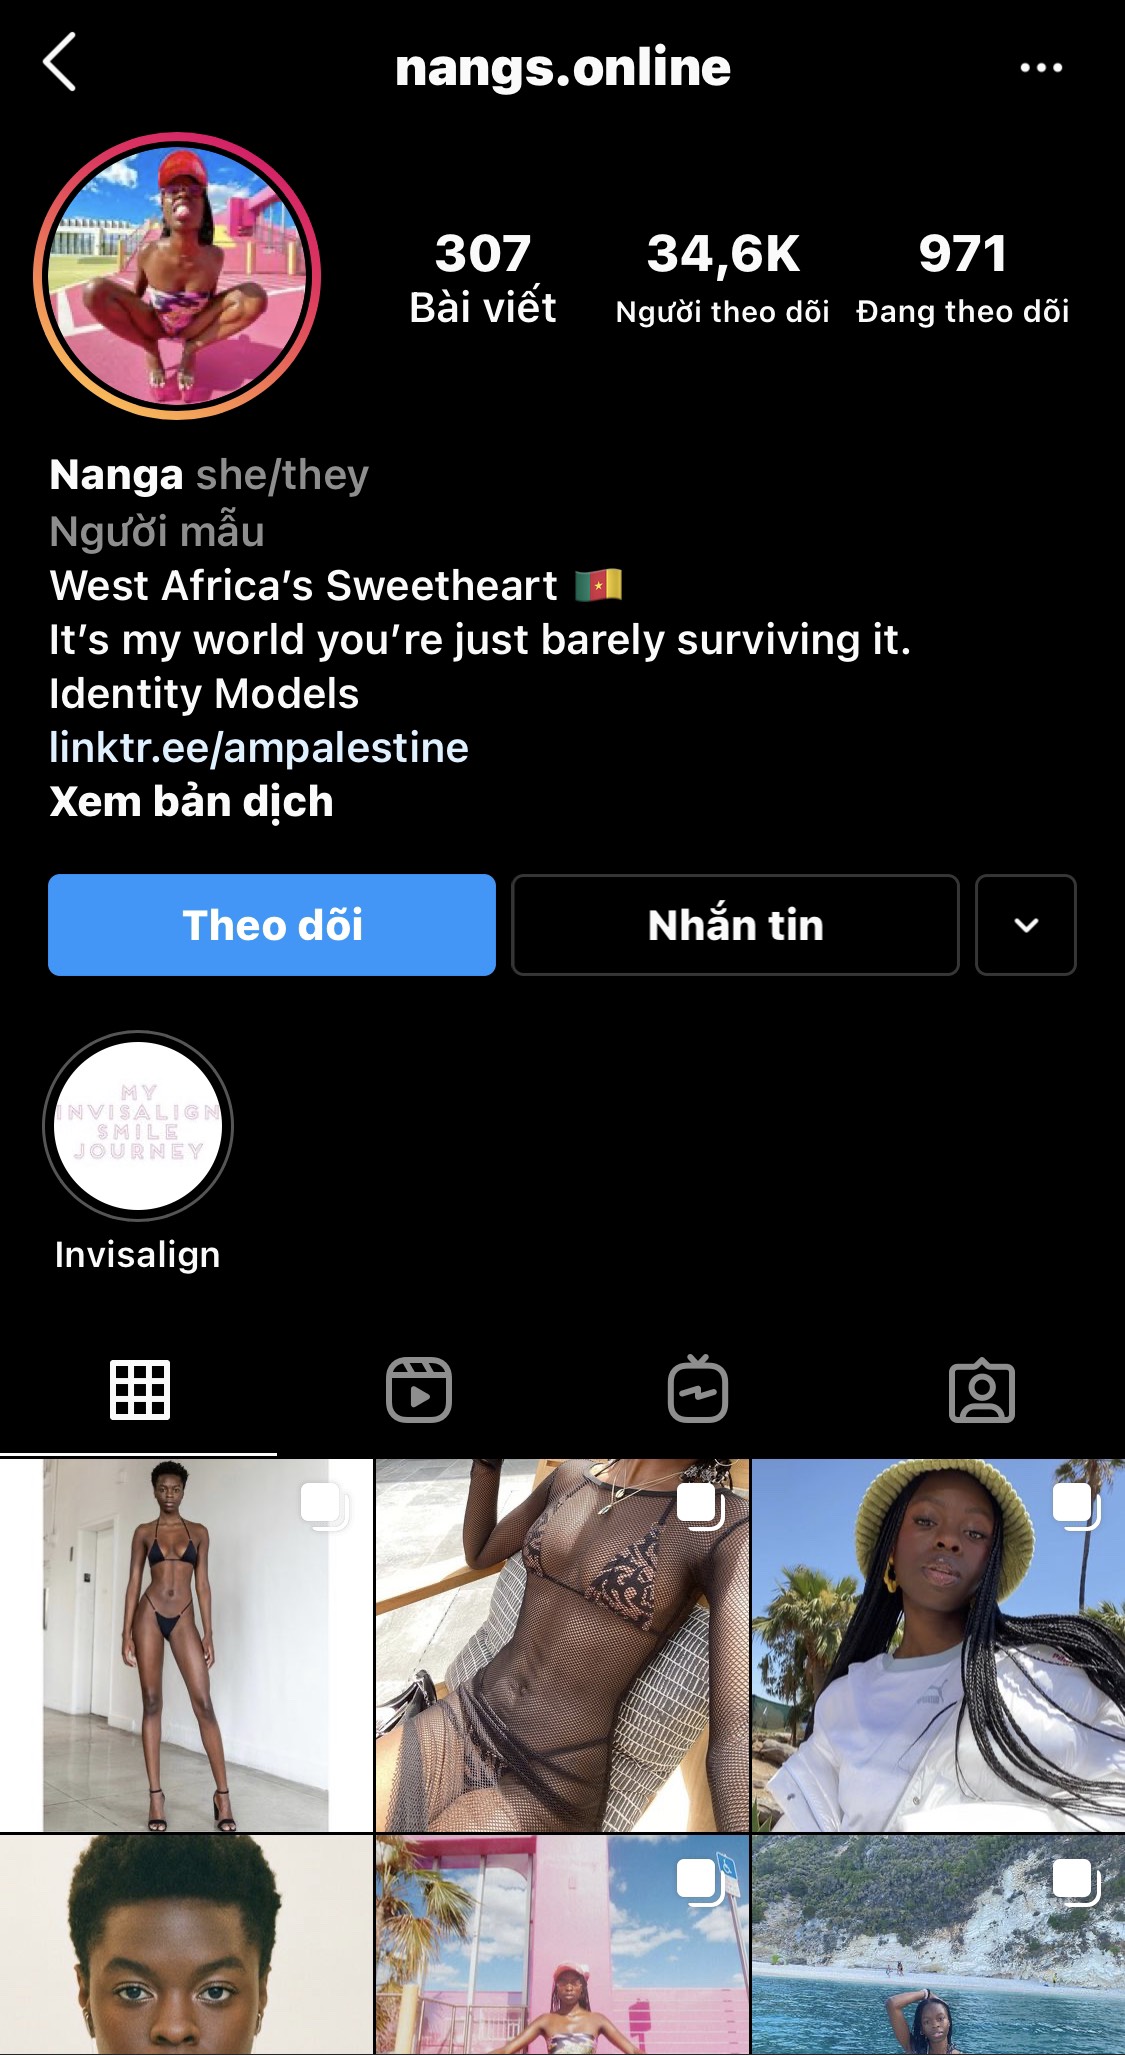 Ghé thăm Instagram của nữ người mẫu da màu 23 tuổi, lượt follows của cô nàng đã tăng đáng kể và Nanga cũng tự tin đăng tải những bức hình quyến rũ, táo bạo. Cô nàng sở hữu hình thể và gương mặt cuốn hút không thua kém bất kì người mẫu chuyên nghiệp nào.